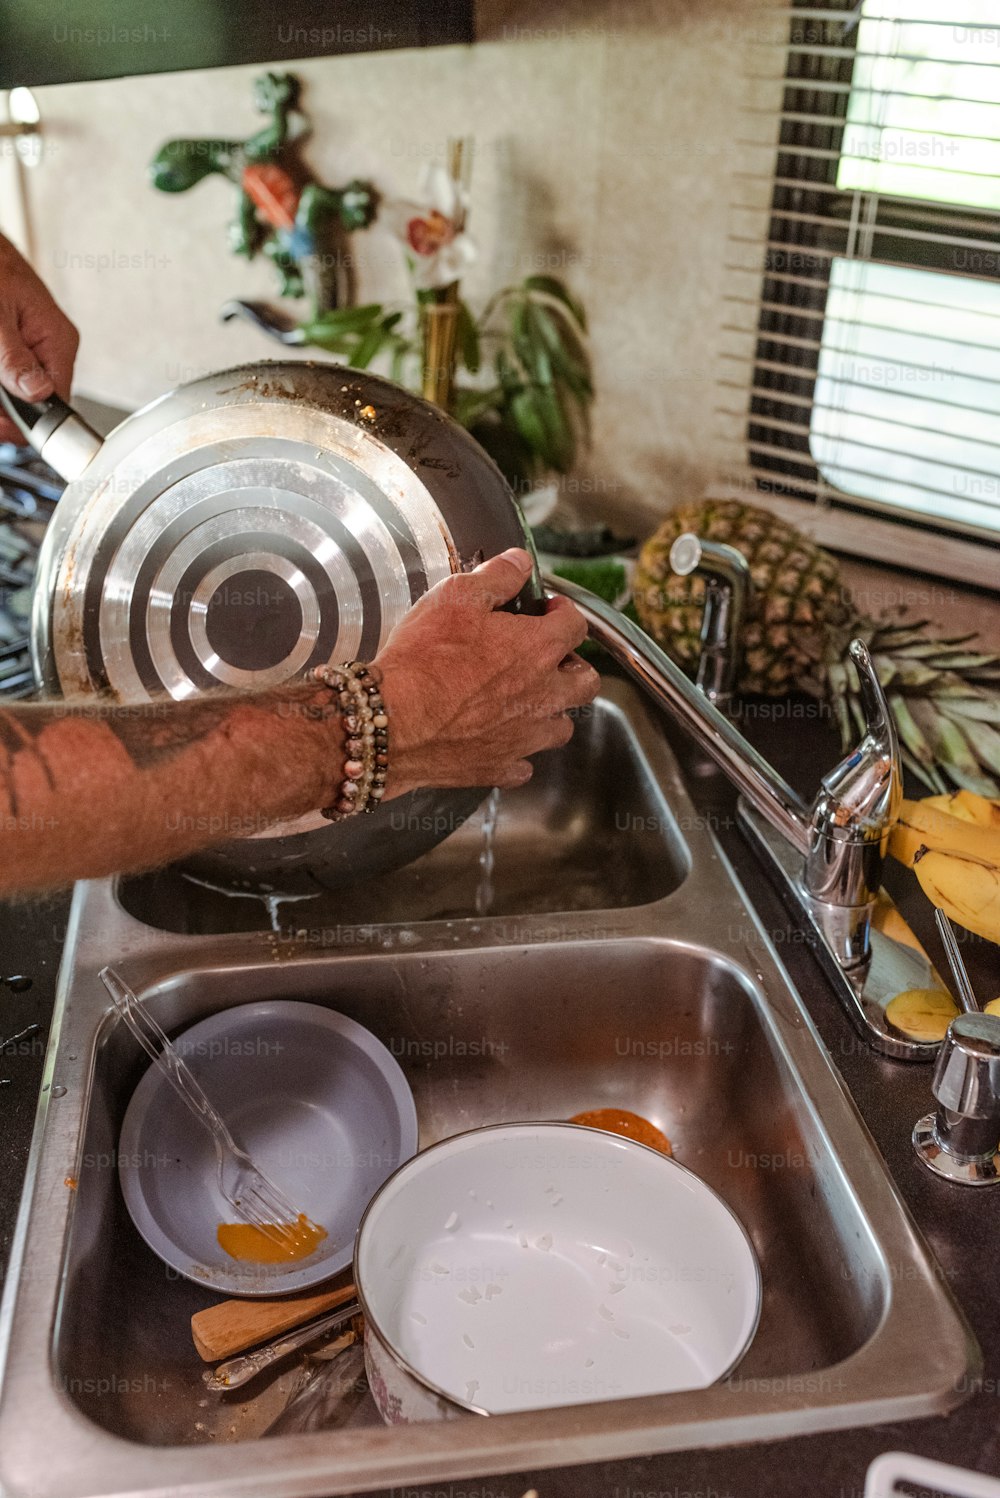 Un hombre lavando platos en un fregadero de cocina